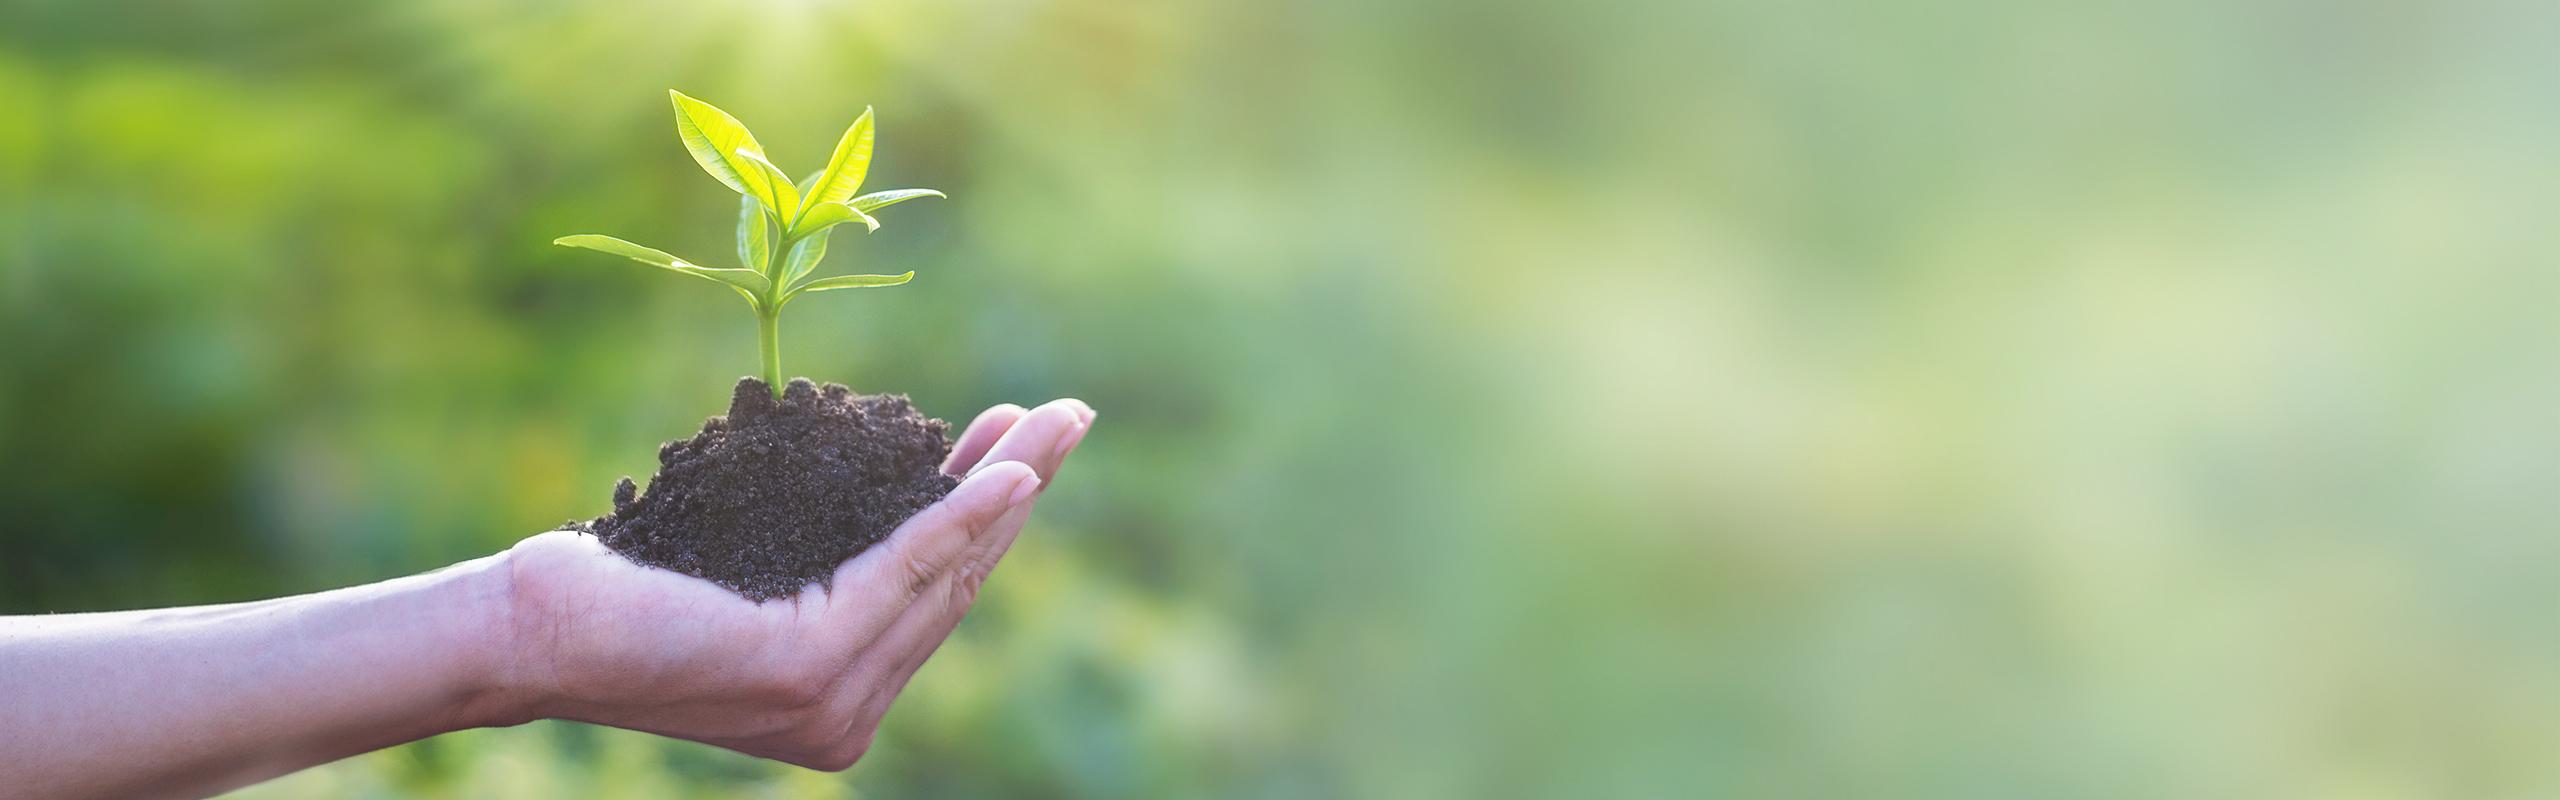 BRITA sustentabilidade mão com terra e planta